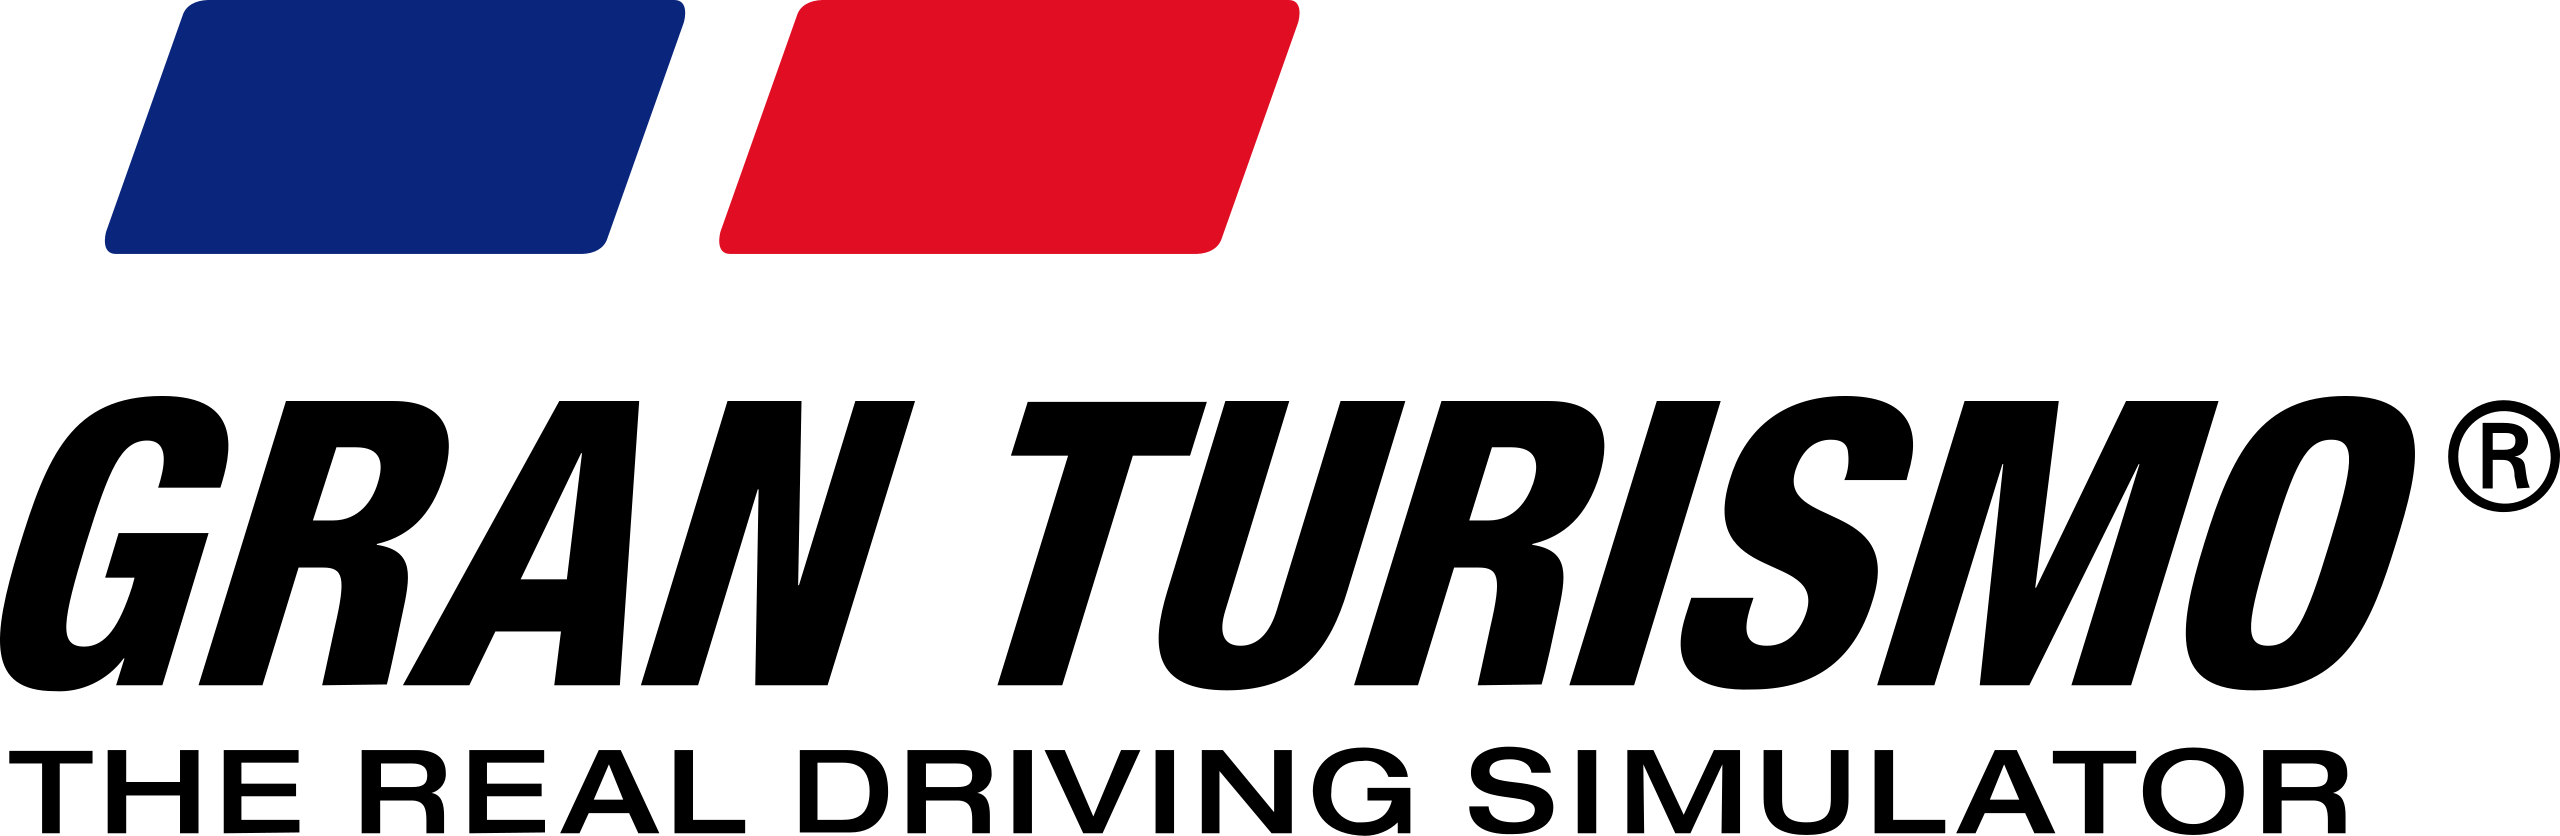 File:Gran Turismo 4 Logo.svg - Wikimedia Commons